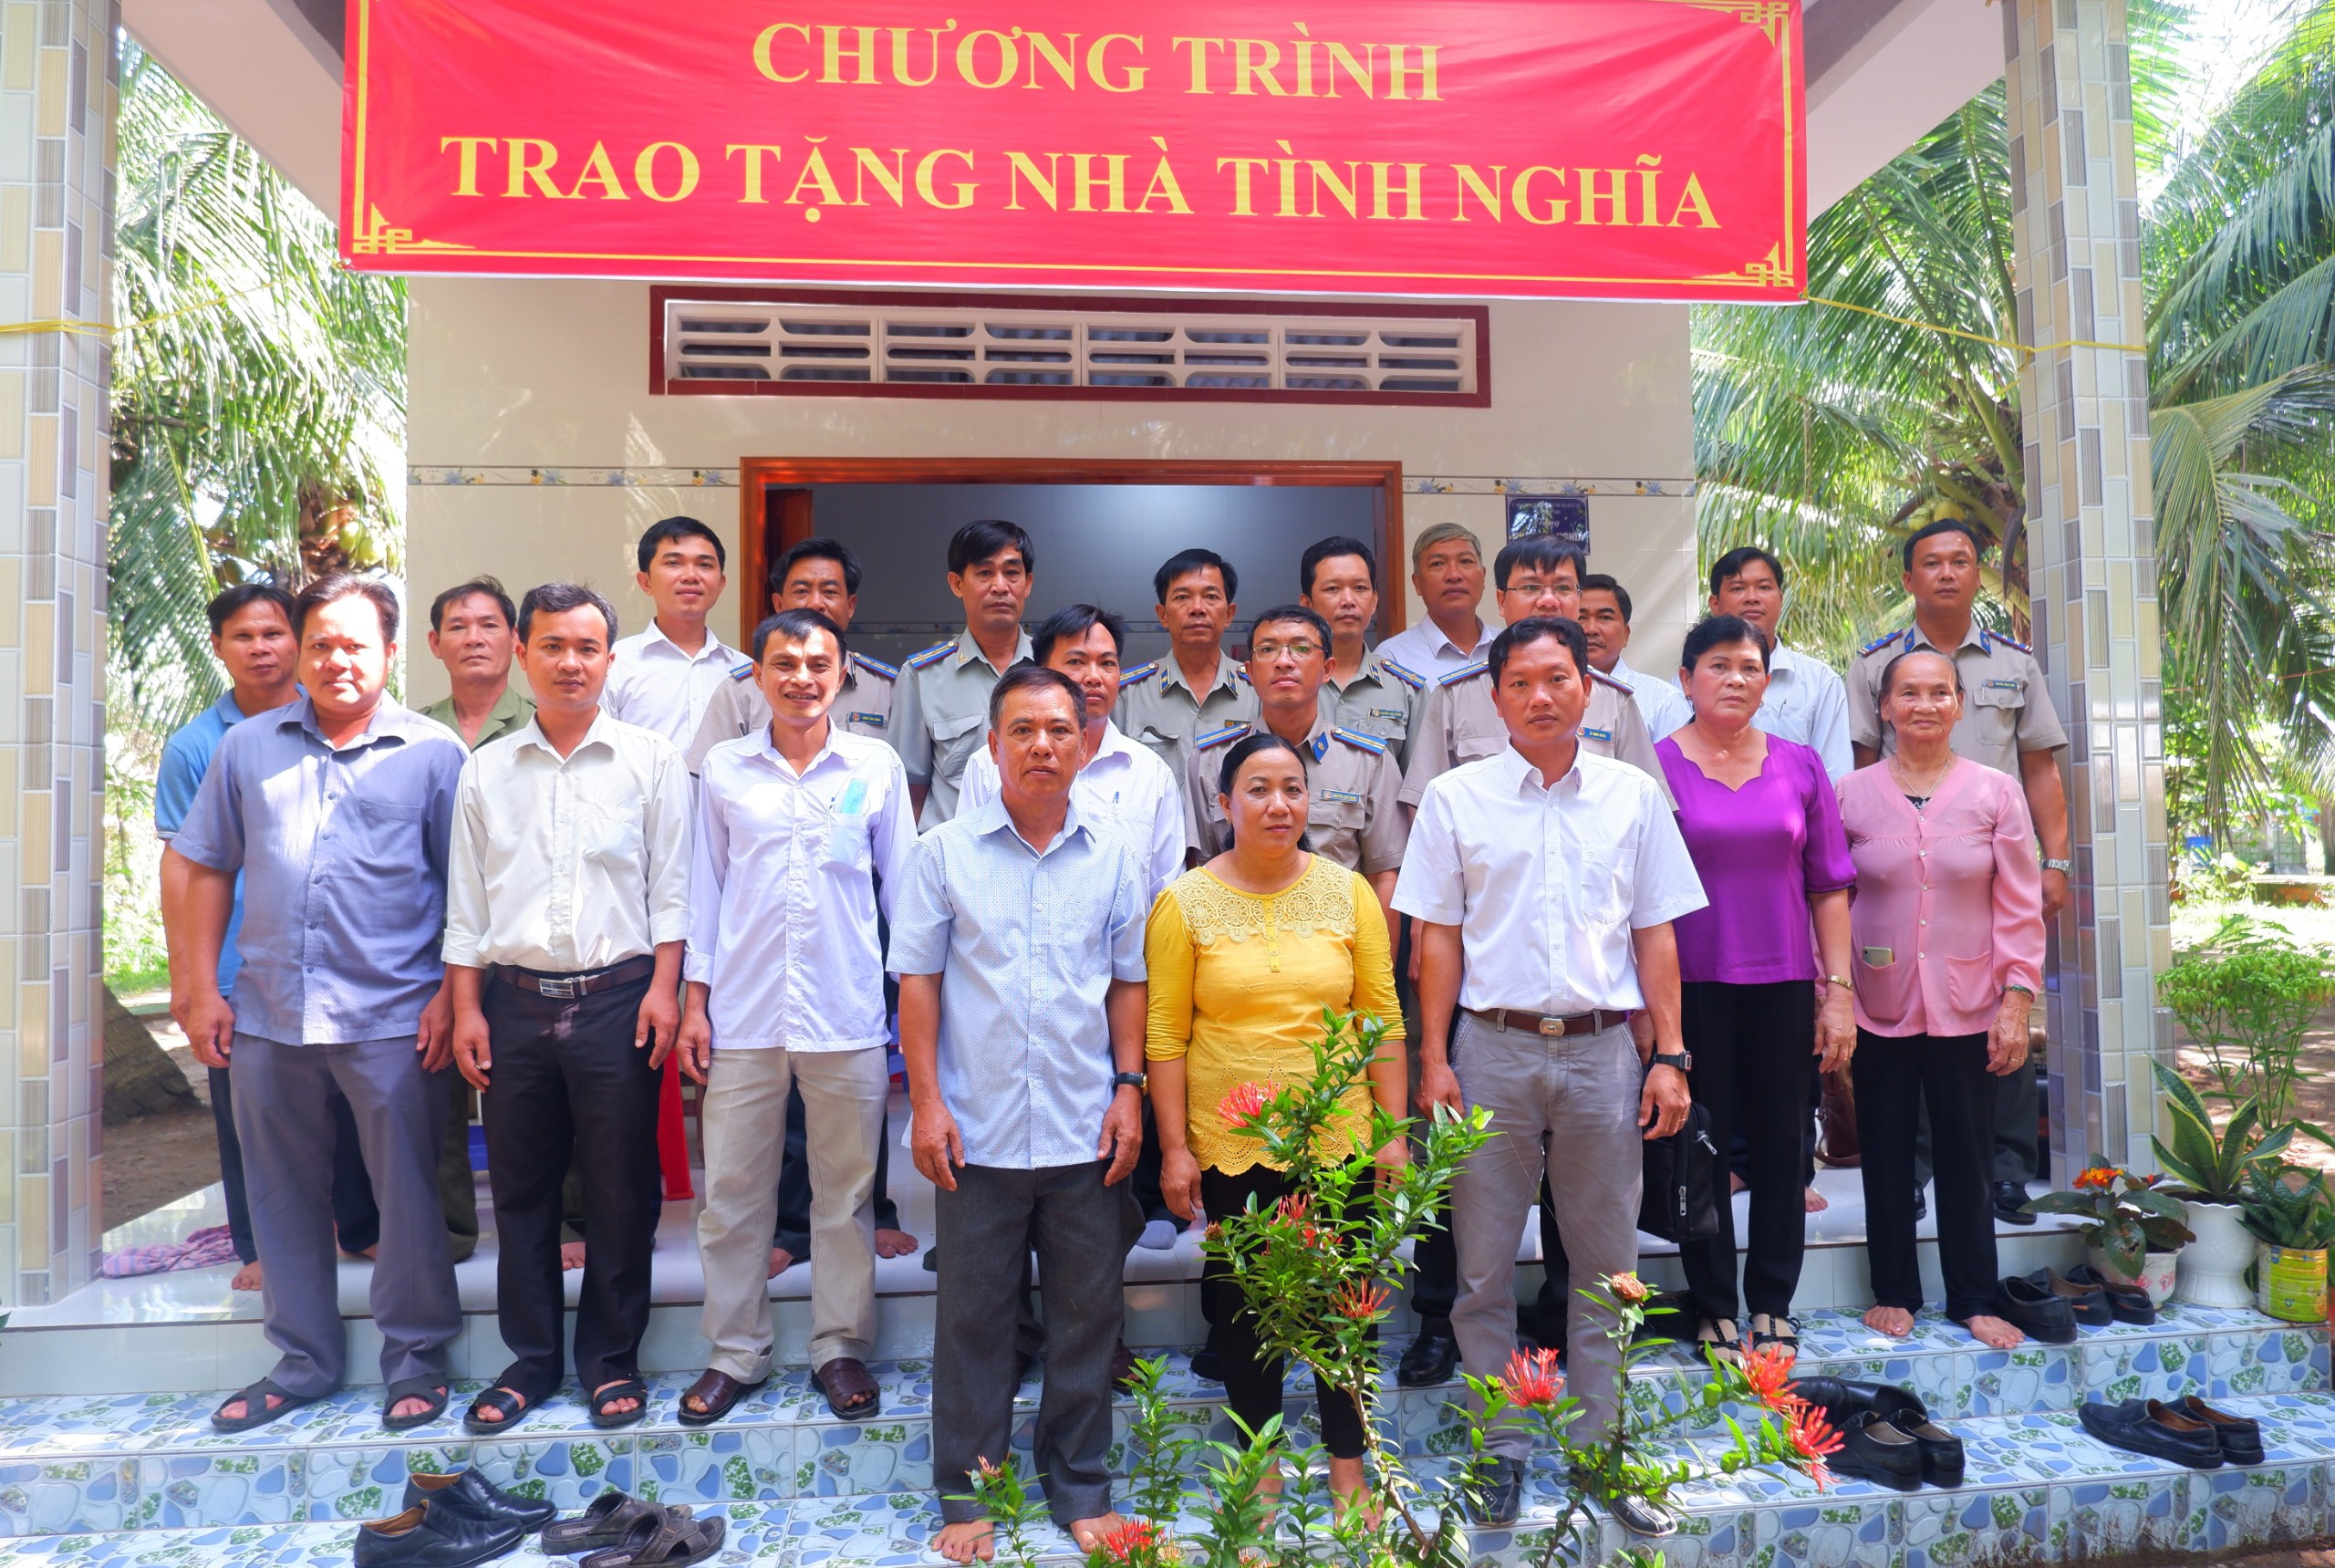 Cục THADS tỉnh trao nhà tình ngĩa cho ông Nguyễn Văn Việt tại xã Hòa Lợi, huyện Thạnh Phú